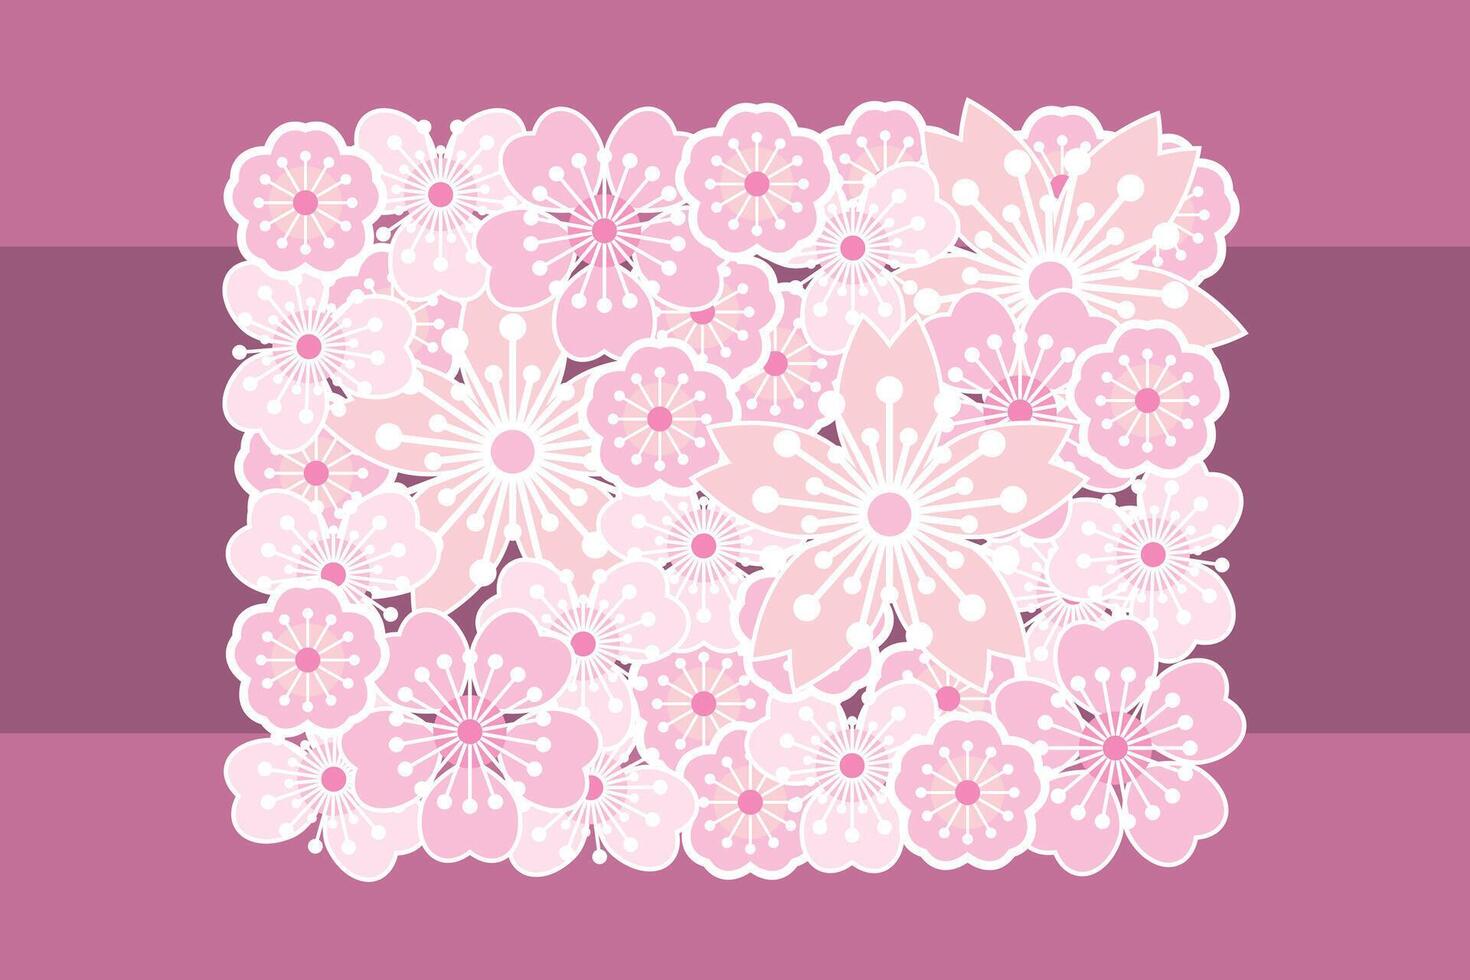 Illustration of abstract sakura flower on pink background. vector